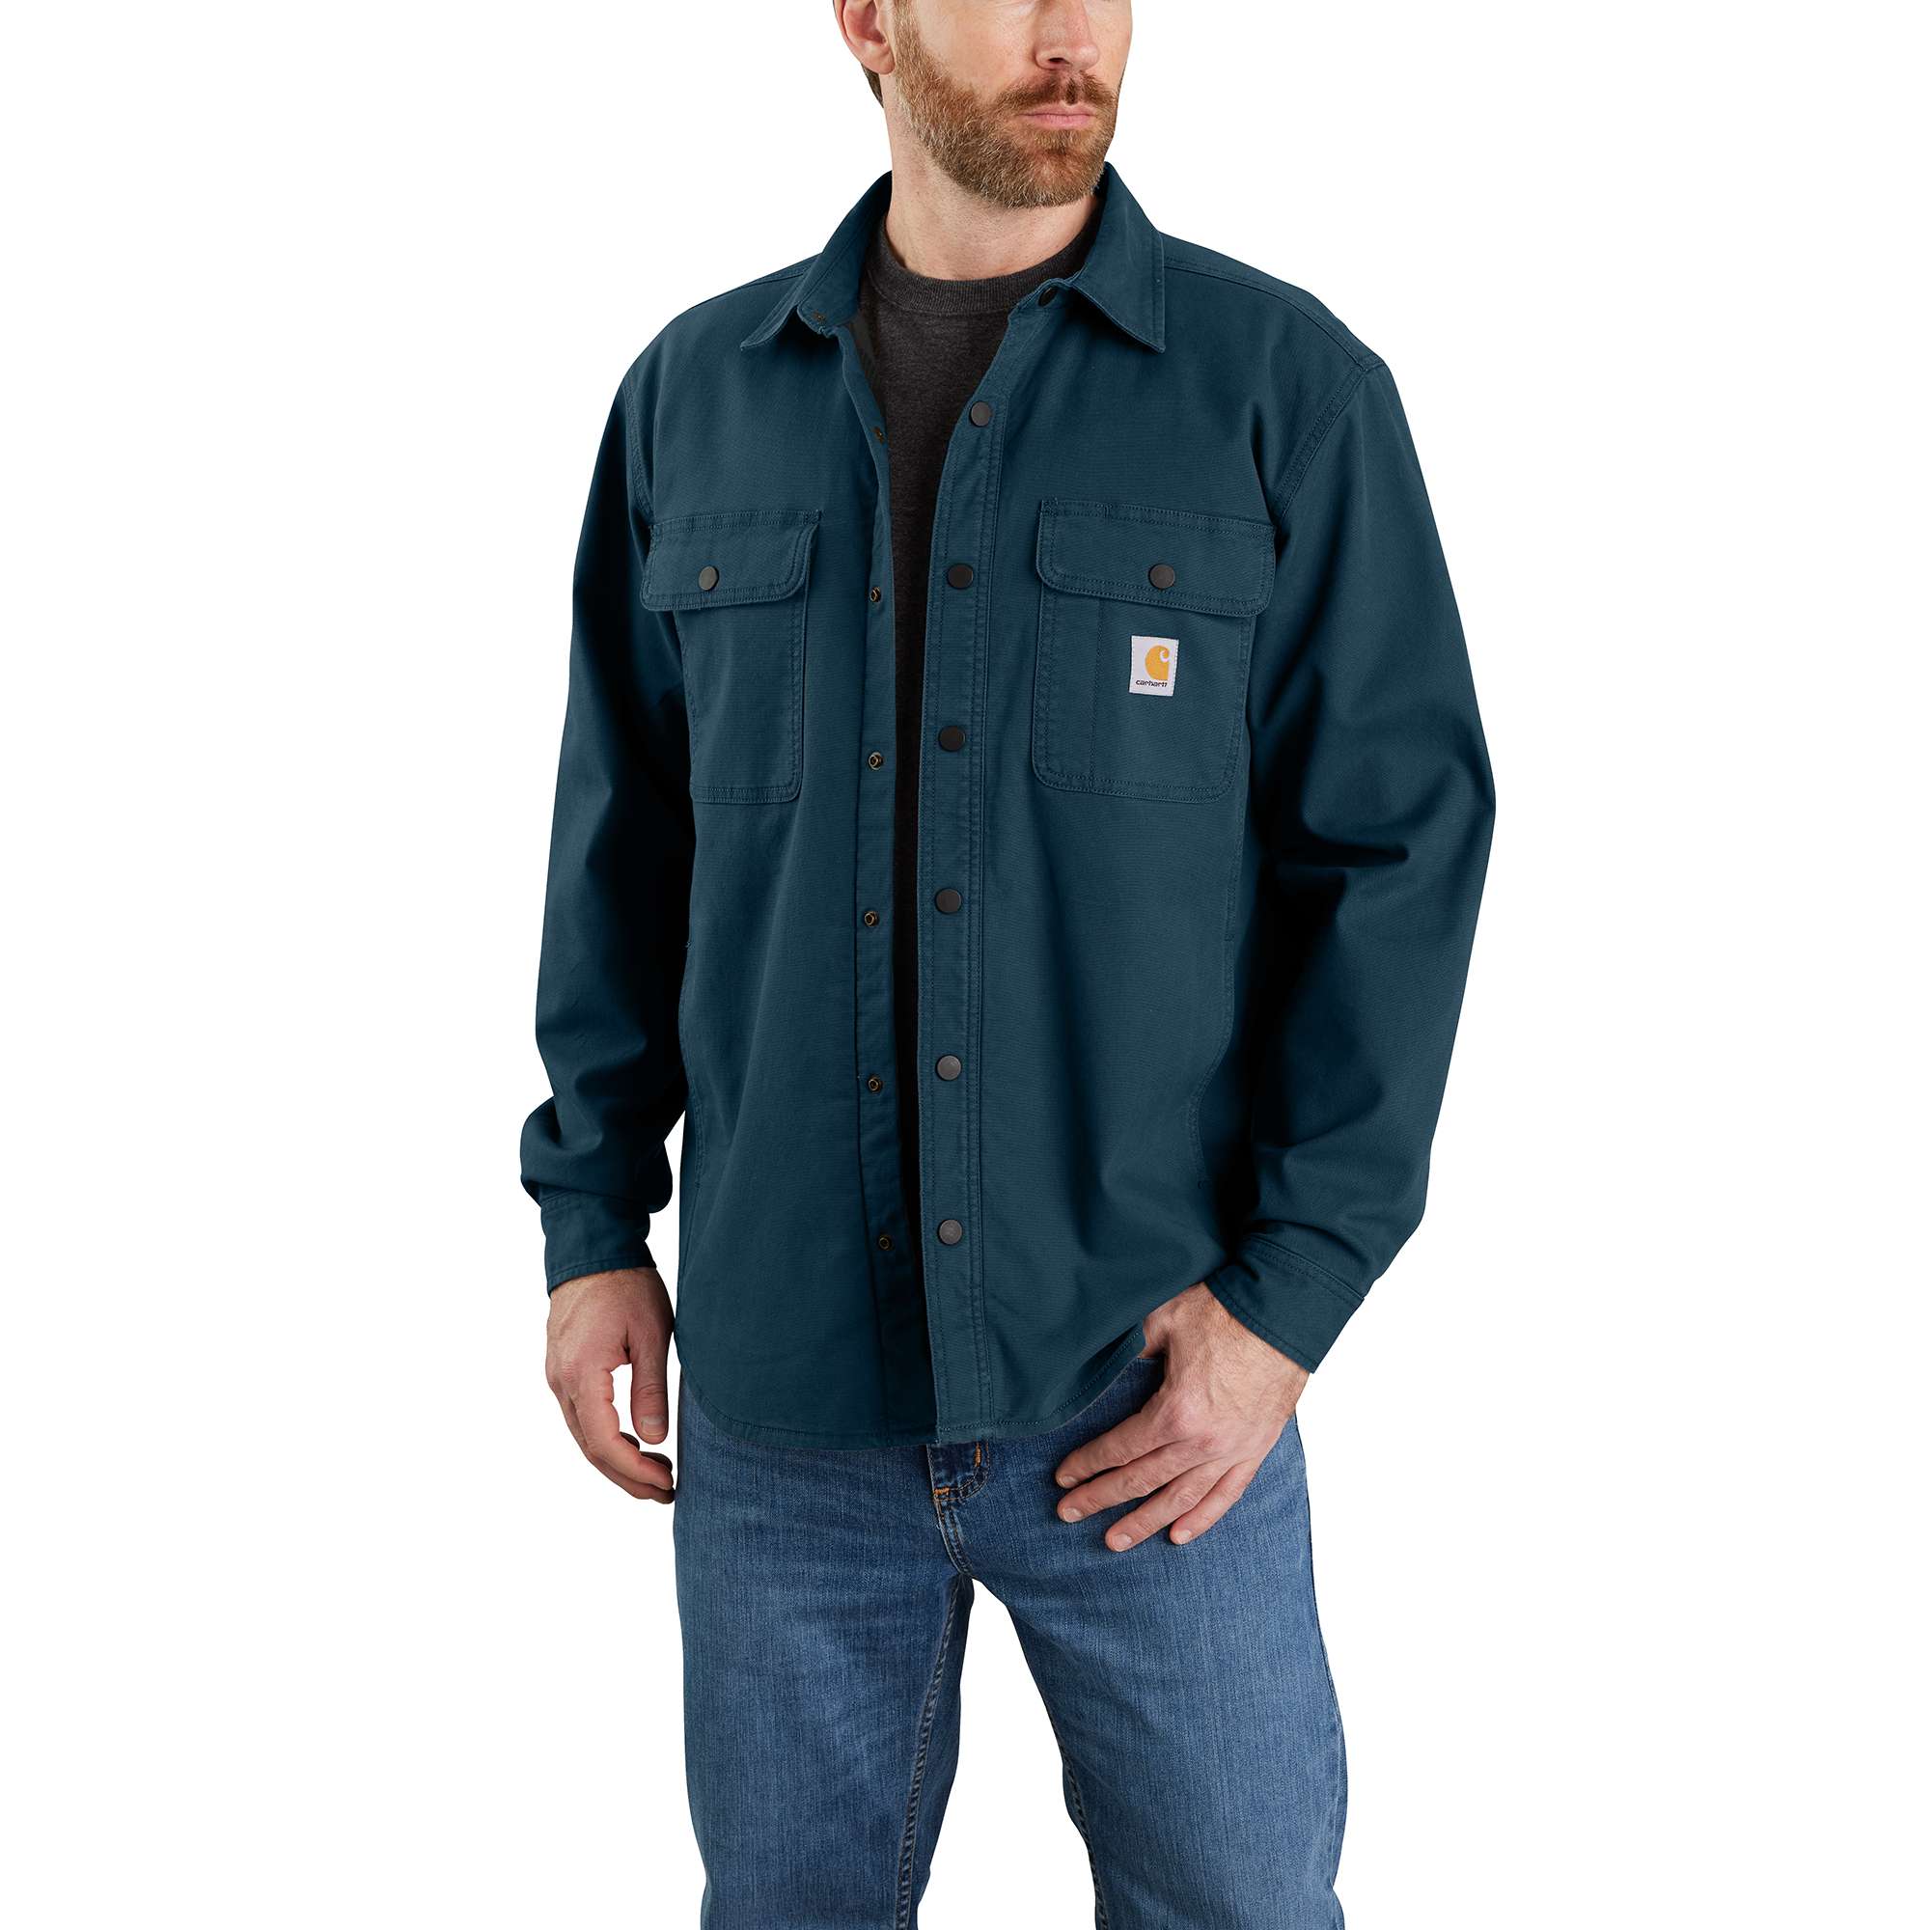 Carhartt Men's Navy Rugged Flex Rigby Long Sleeve Work Shirt